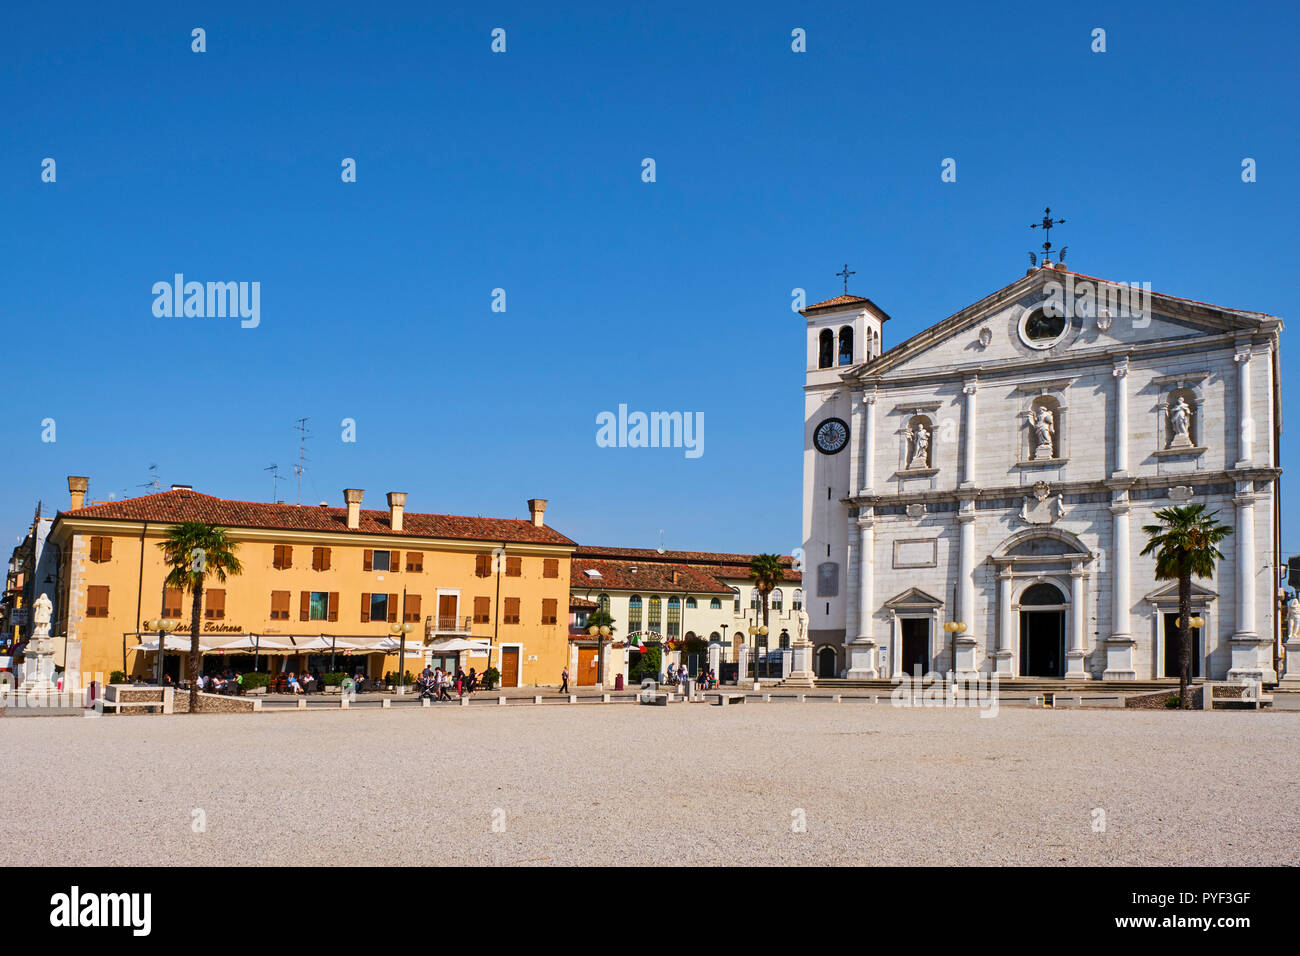 L'Italie, Frioul-Vénétie Julienne, Palmanova, patrimoine mondial de l'UNESCO, à cathedrral La Piazza Grande Banque D'Images